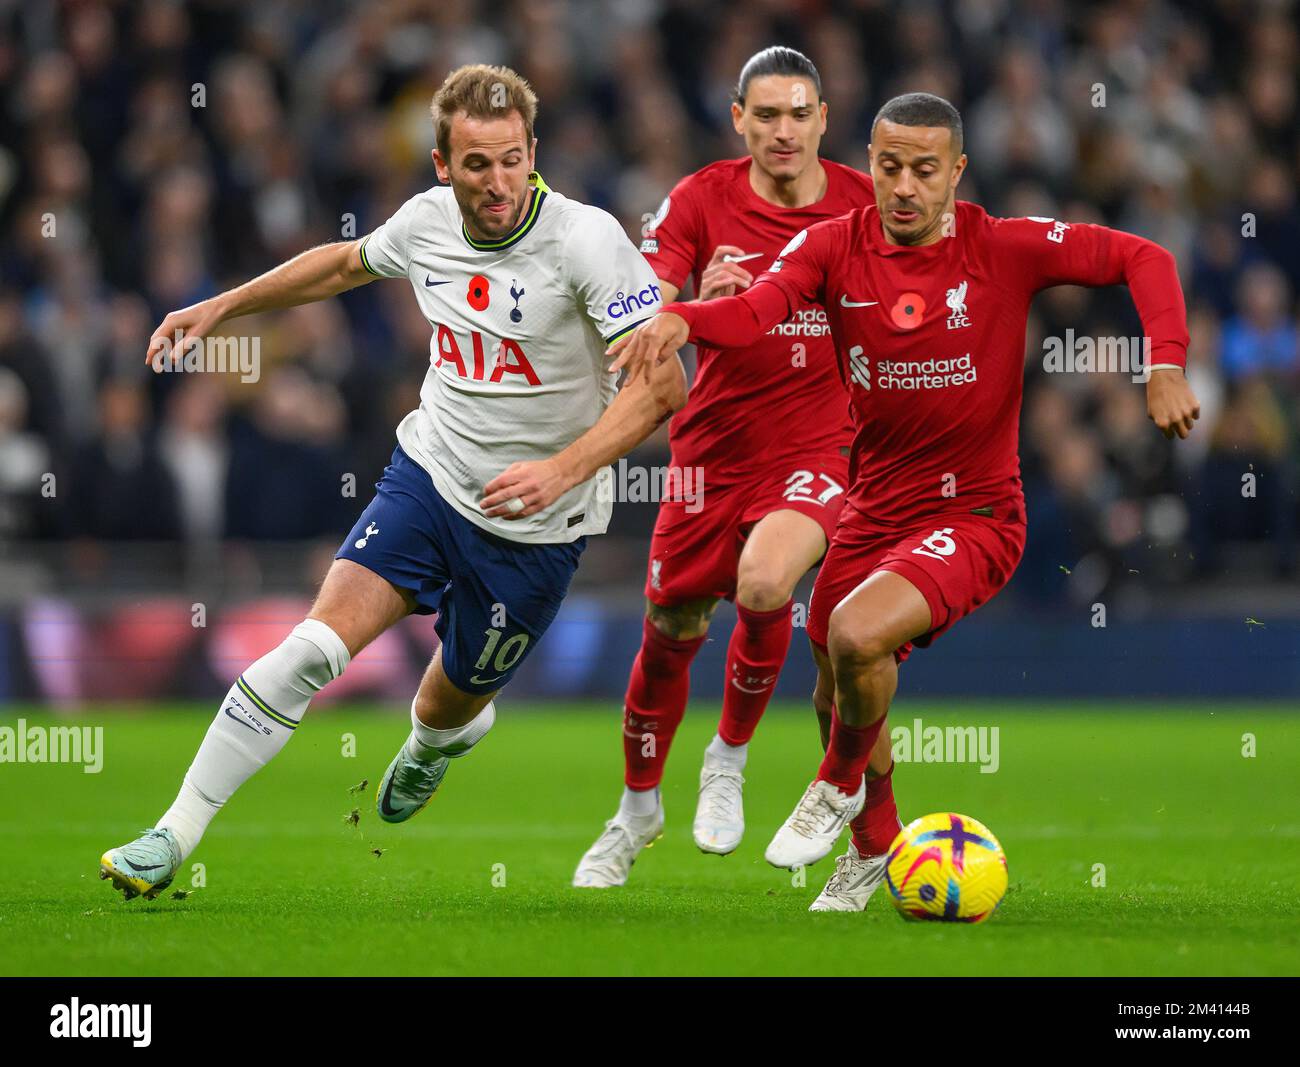 06 de noviembre de 2022 - Tottenham Hotspur contra Liverpool - Premier League - Tottenham Hotspur Stadium Harry Kane del Tottenham lucha con Thiago Alcantara. Imagen : Mark Pain / Alamy Foto de stock